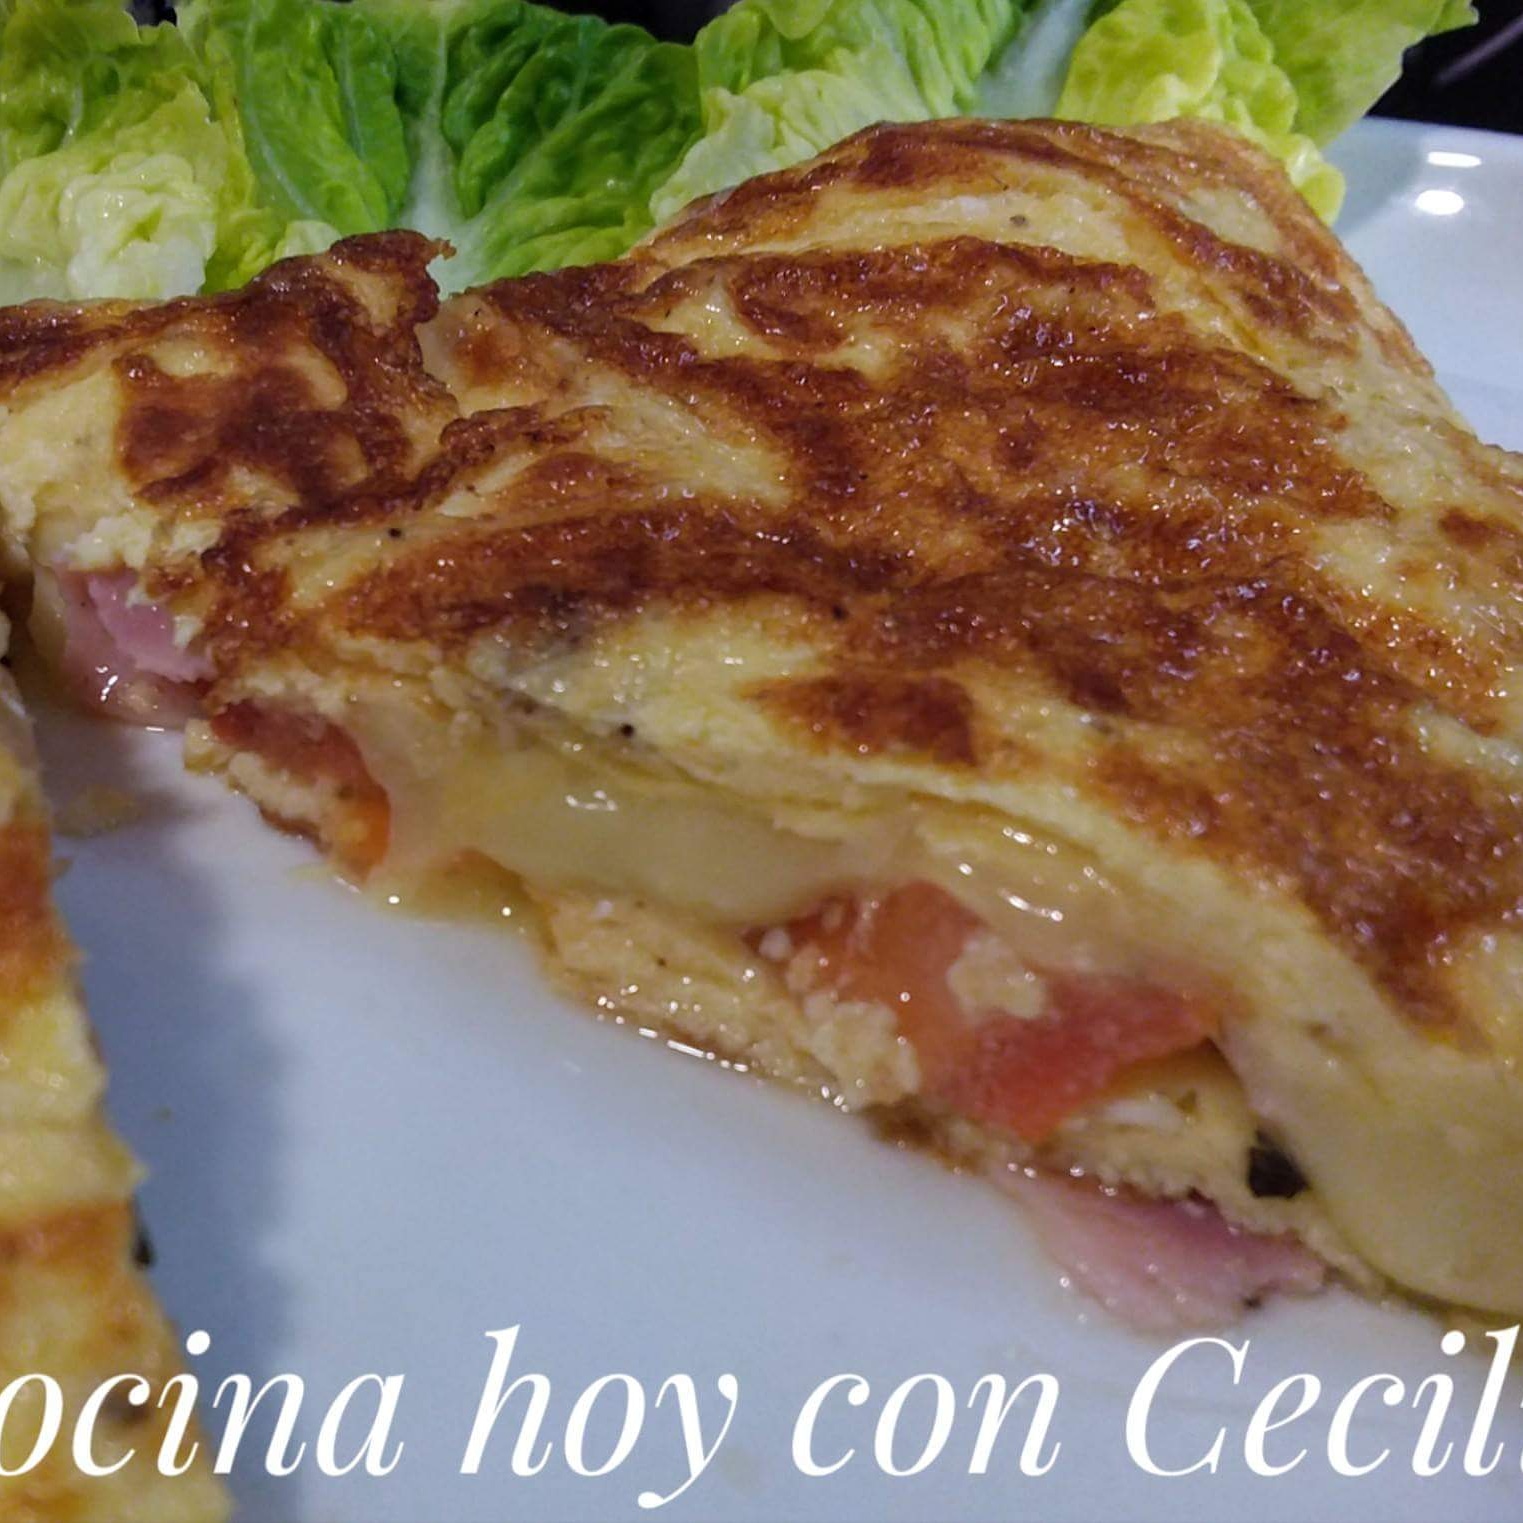 Omelette con jamón, queso, tomate y orégano - - Receta - Canal Cocina